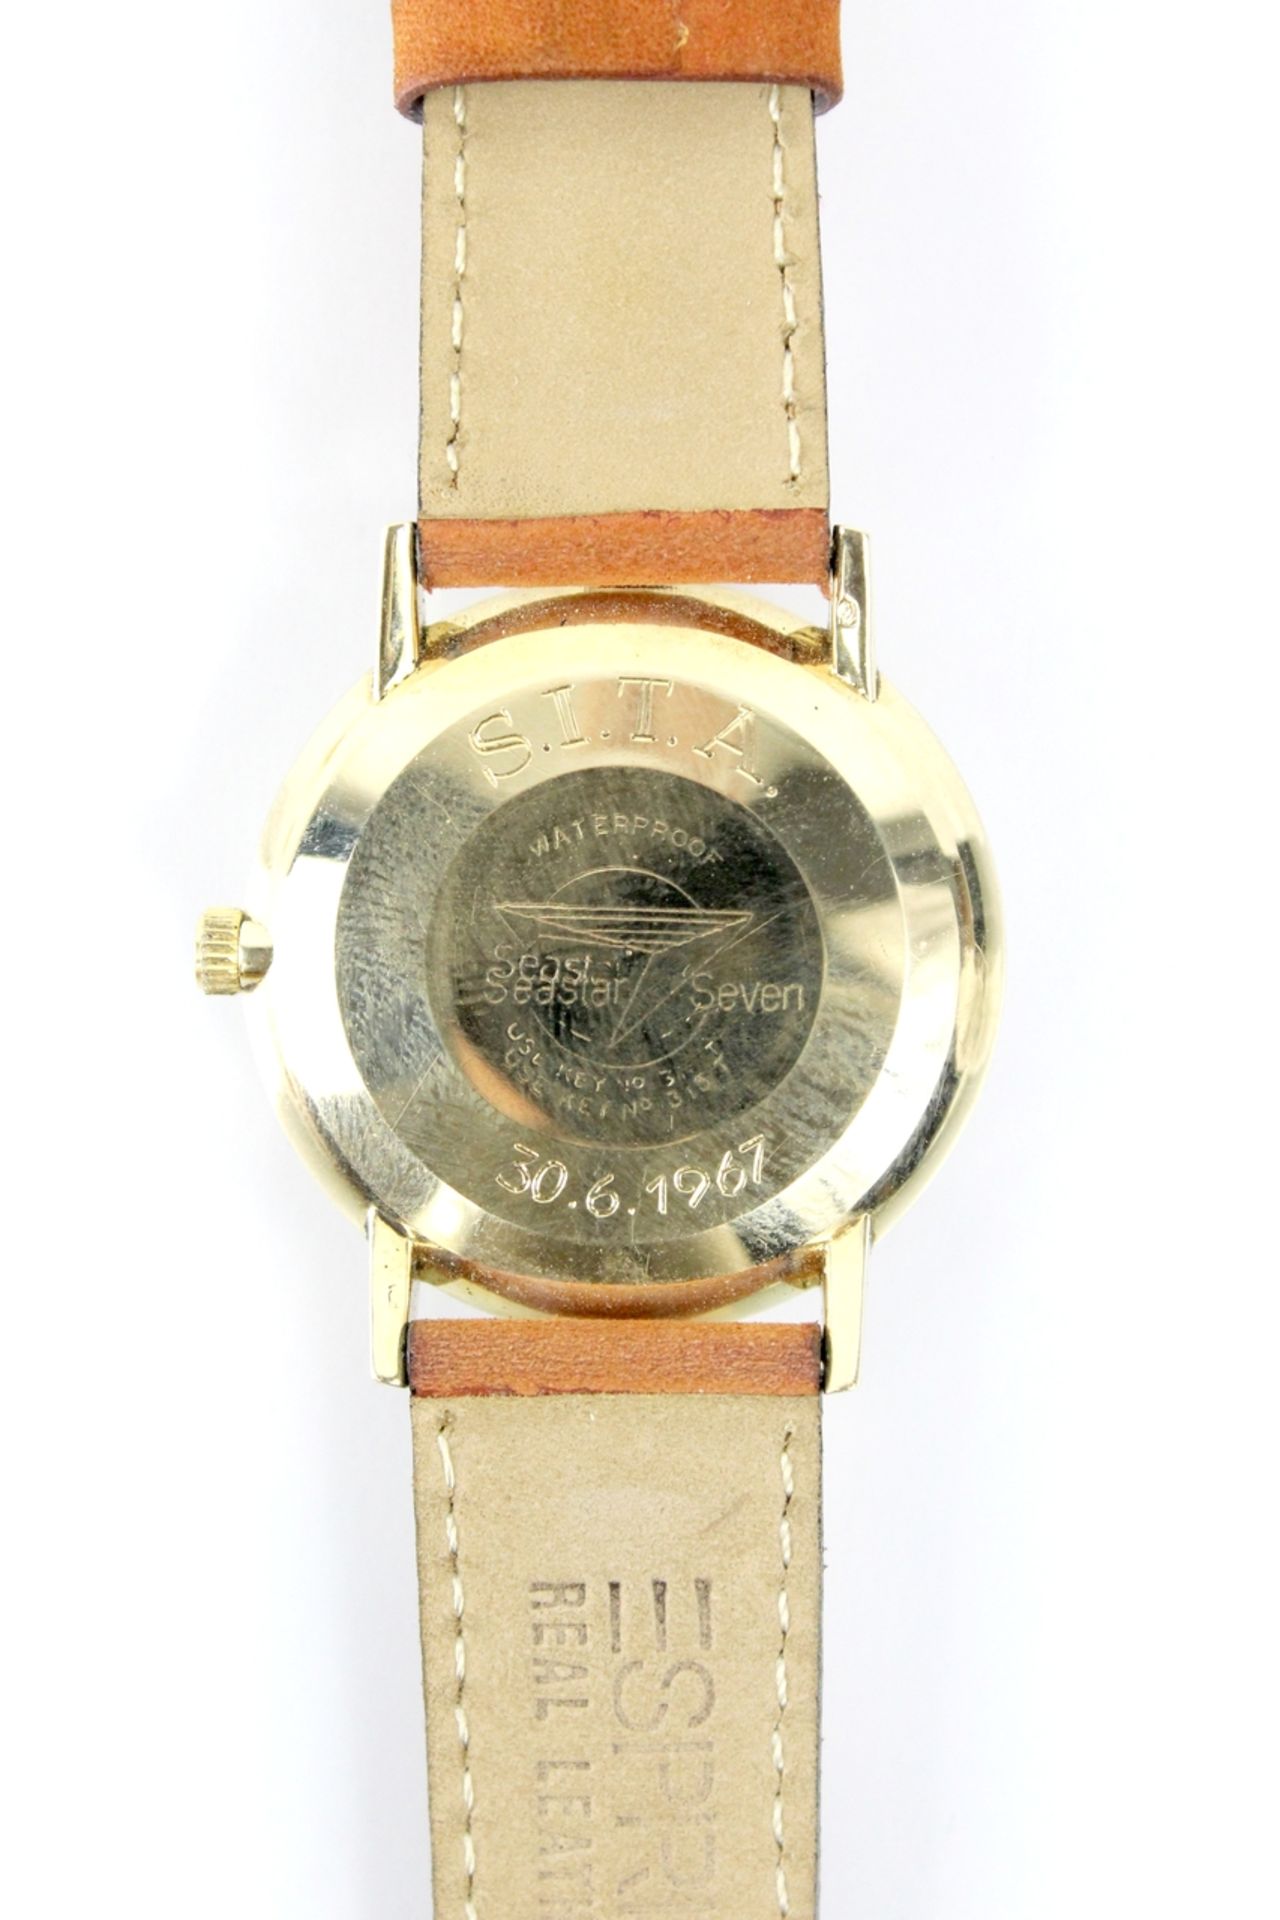 585er goldene Tissot Viso Date Automatic Seestar Seven Armbanduhr 1960er Jahre - Bild 3 aus 3